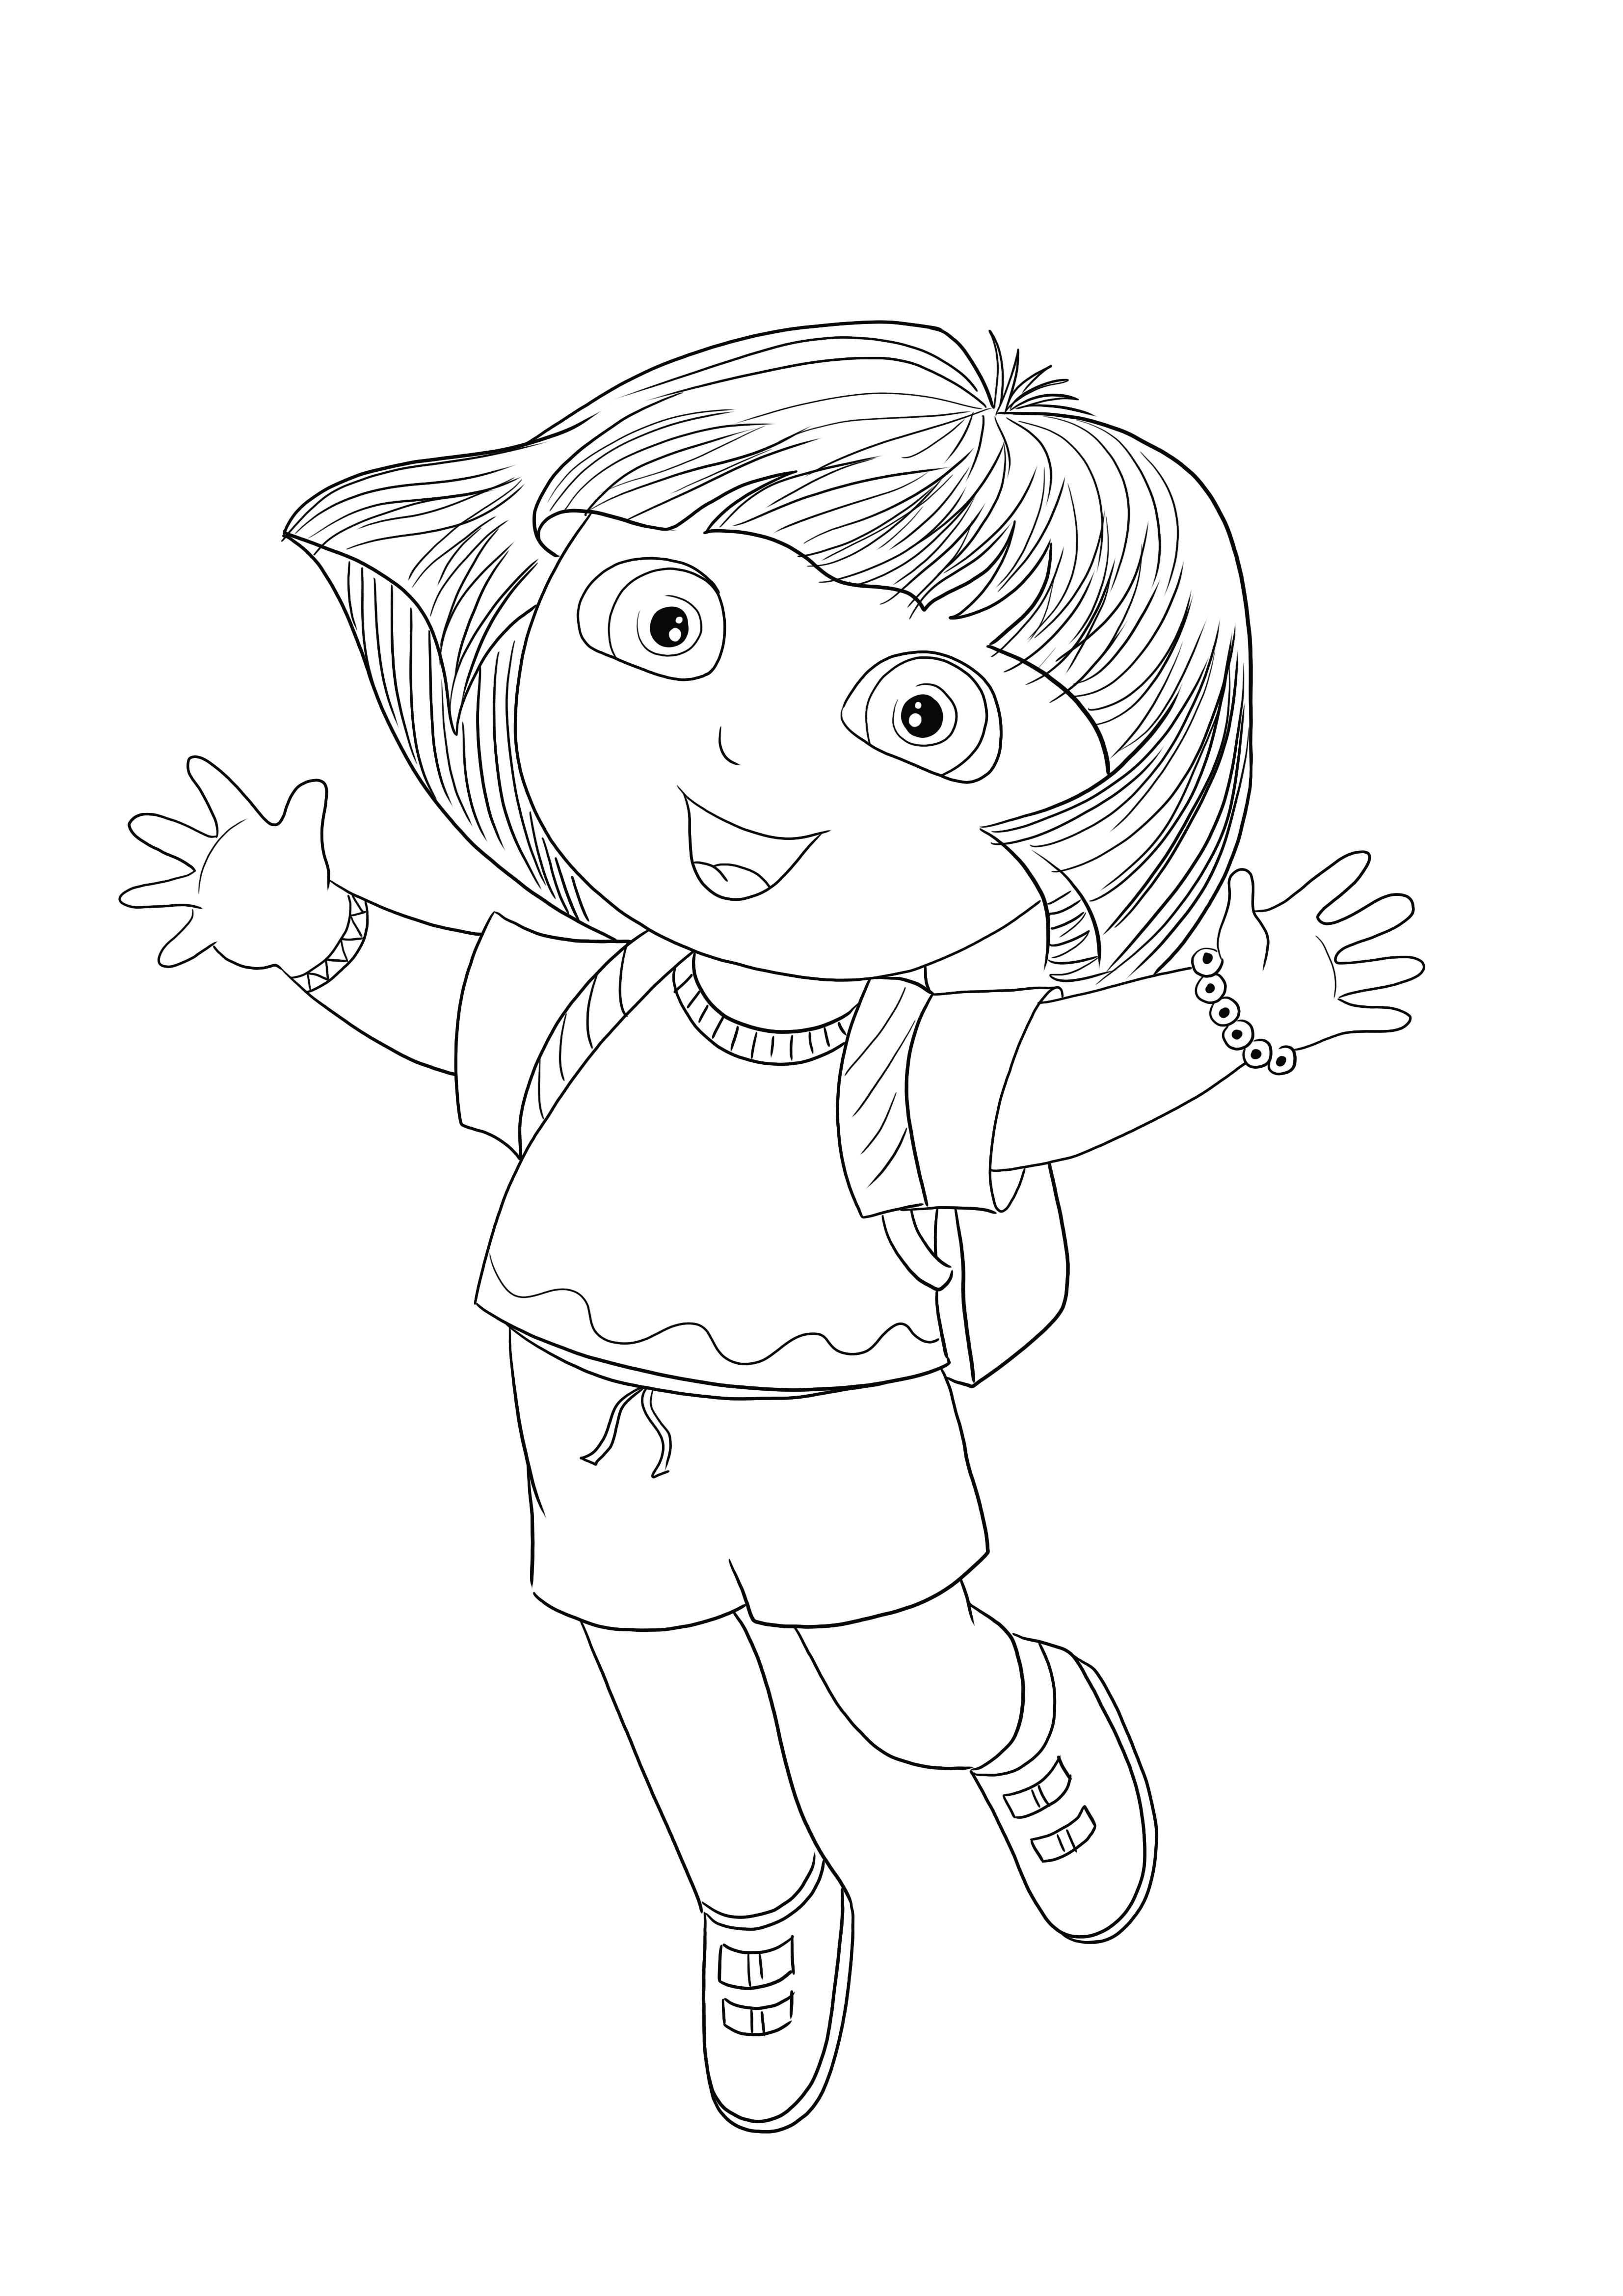 Happy Dora está pulando como ela gosta de ser colorida e impressa gratuitamente por seus fãs